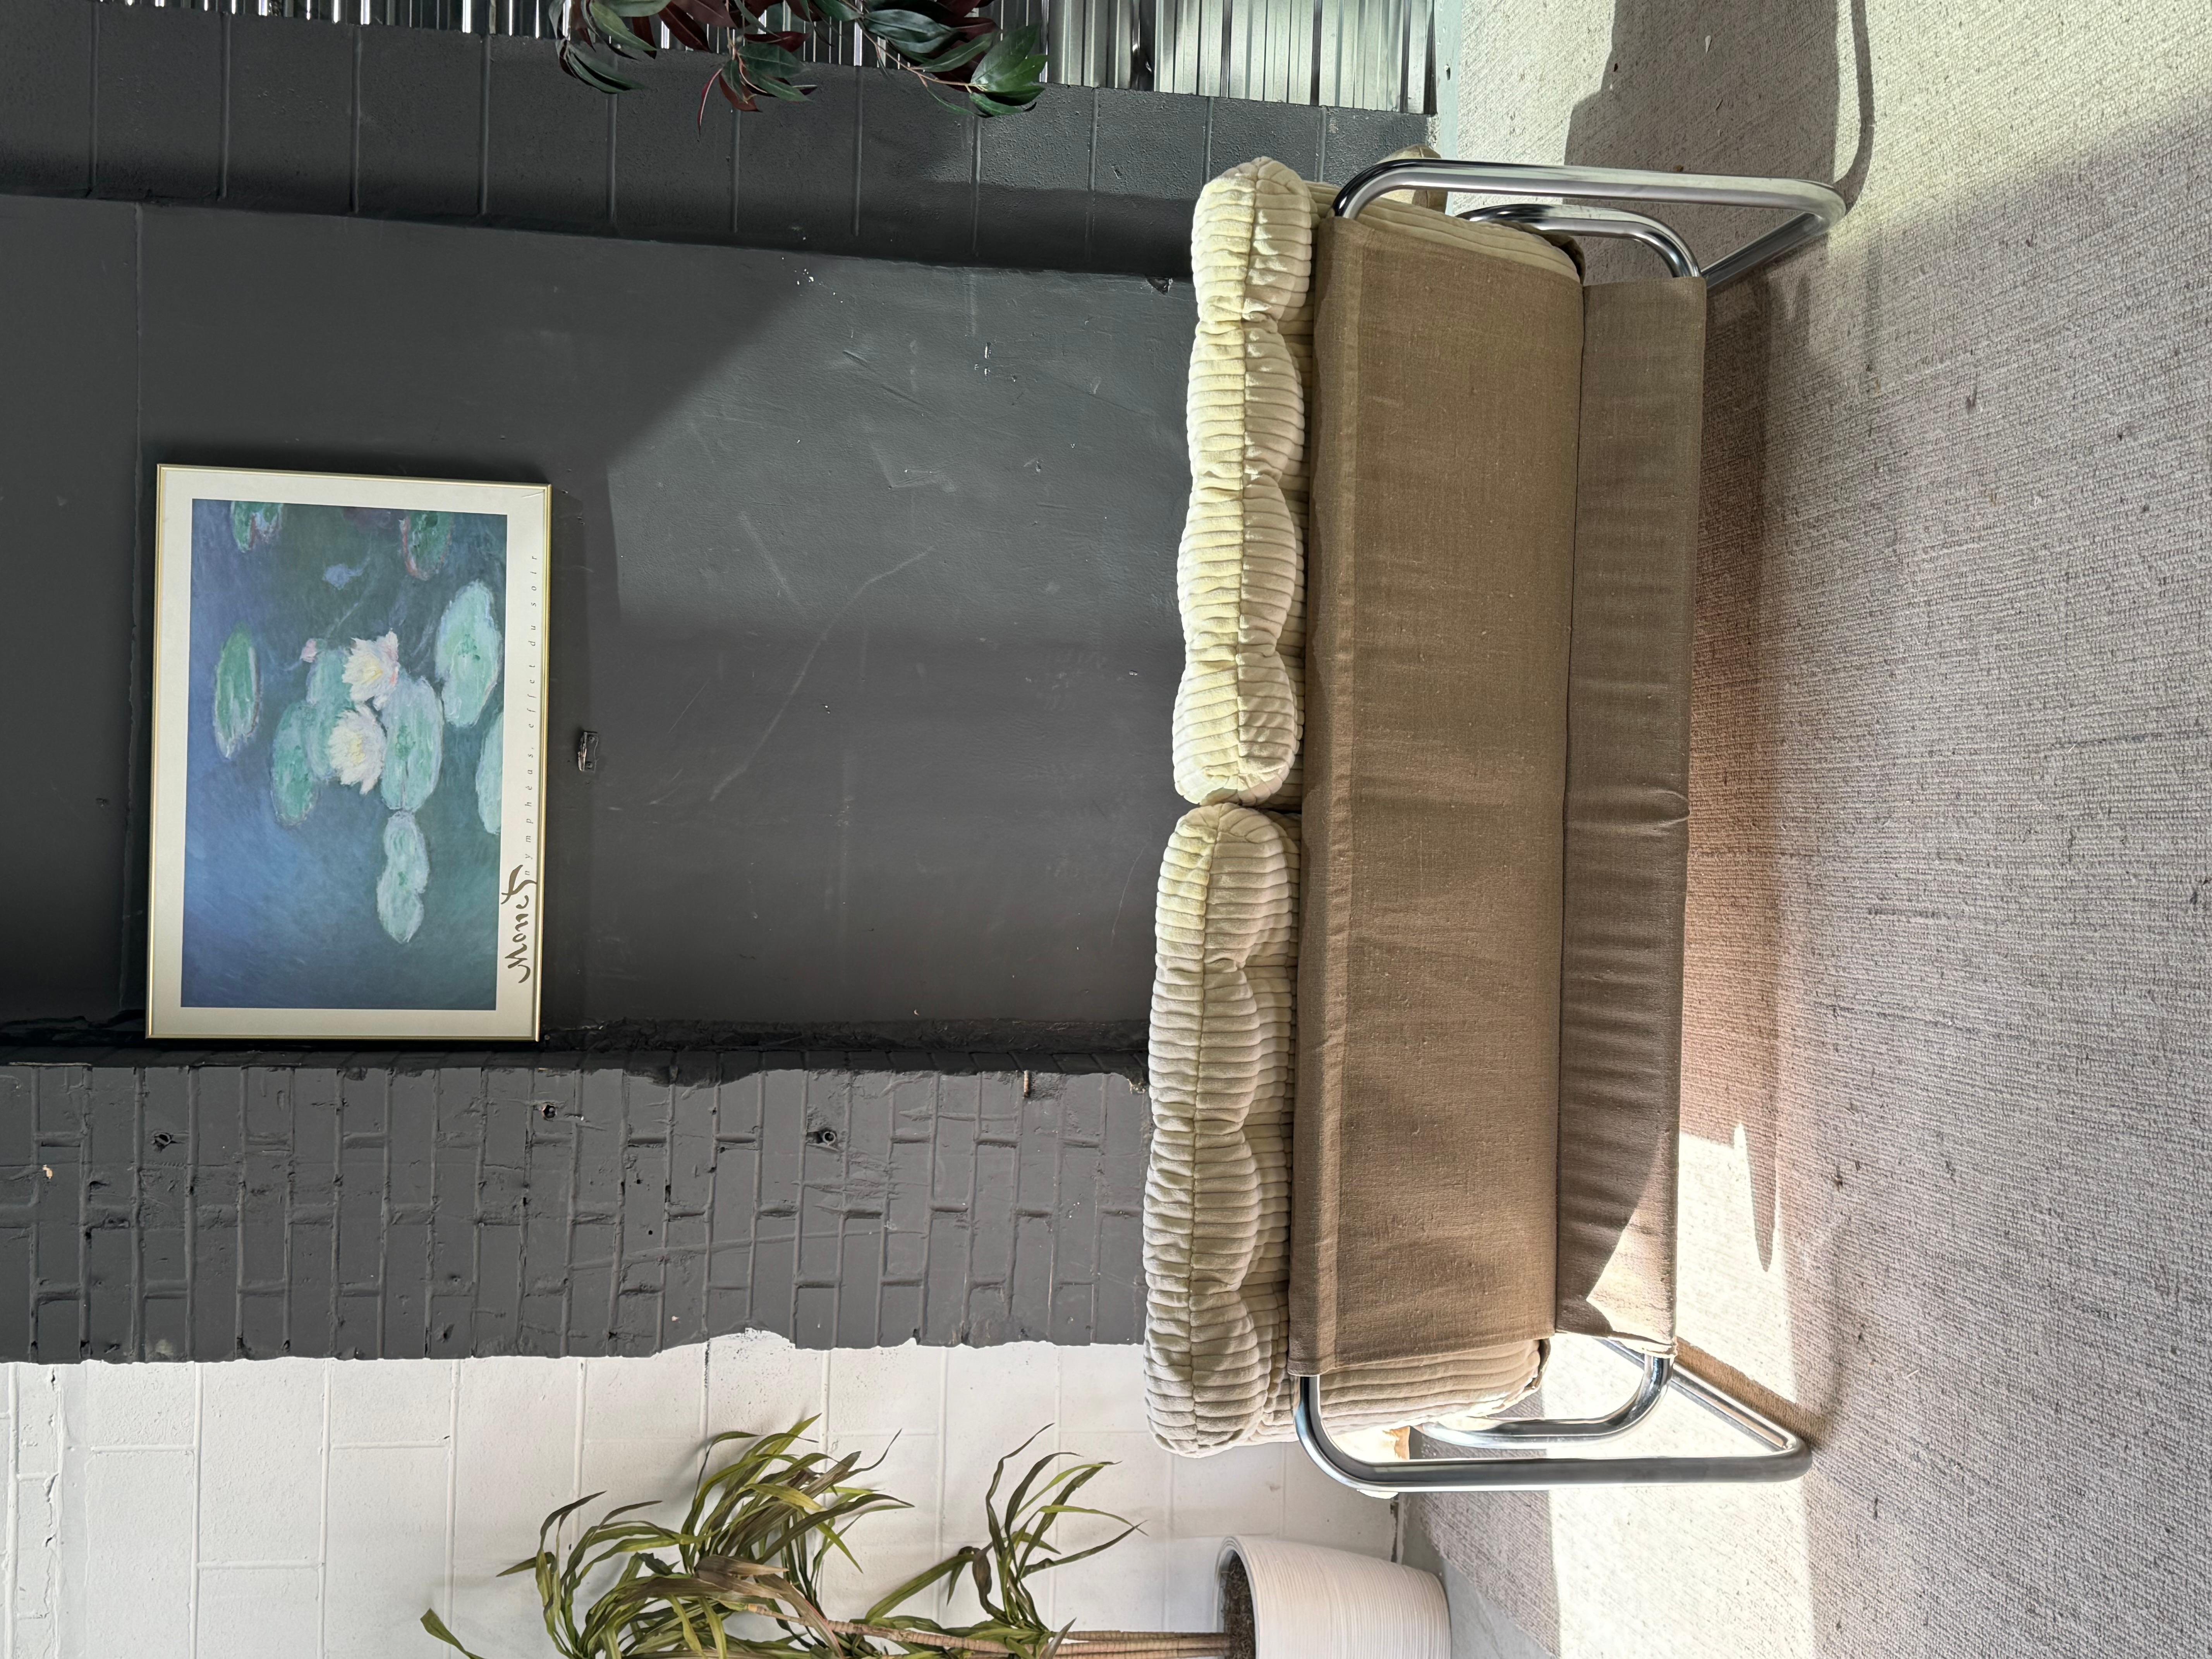 Magnifique canapé Borkum vintage en tube chromé de Johan Bertil Haggstrom pour Ikea. Une sublime pièce d'apparat discrète. Conserve le harnais en lin beige et les accoudoirs rembourrés d'origine. Les coussins ont été fraîchement retapissés dans un